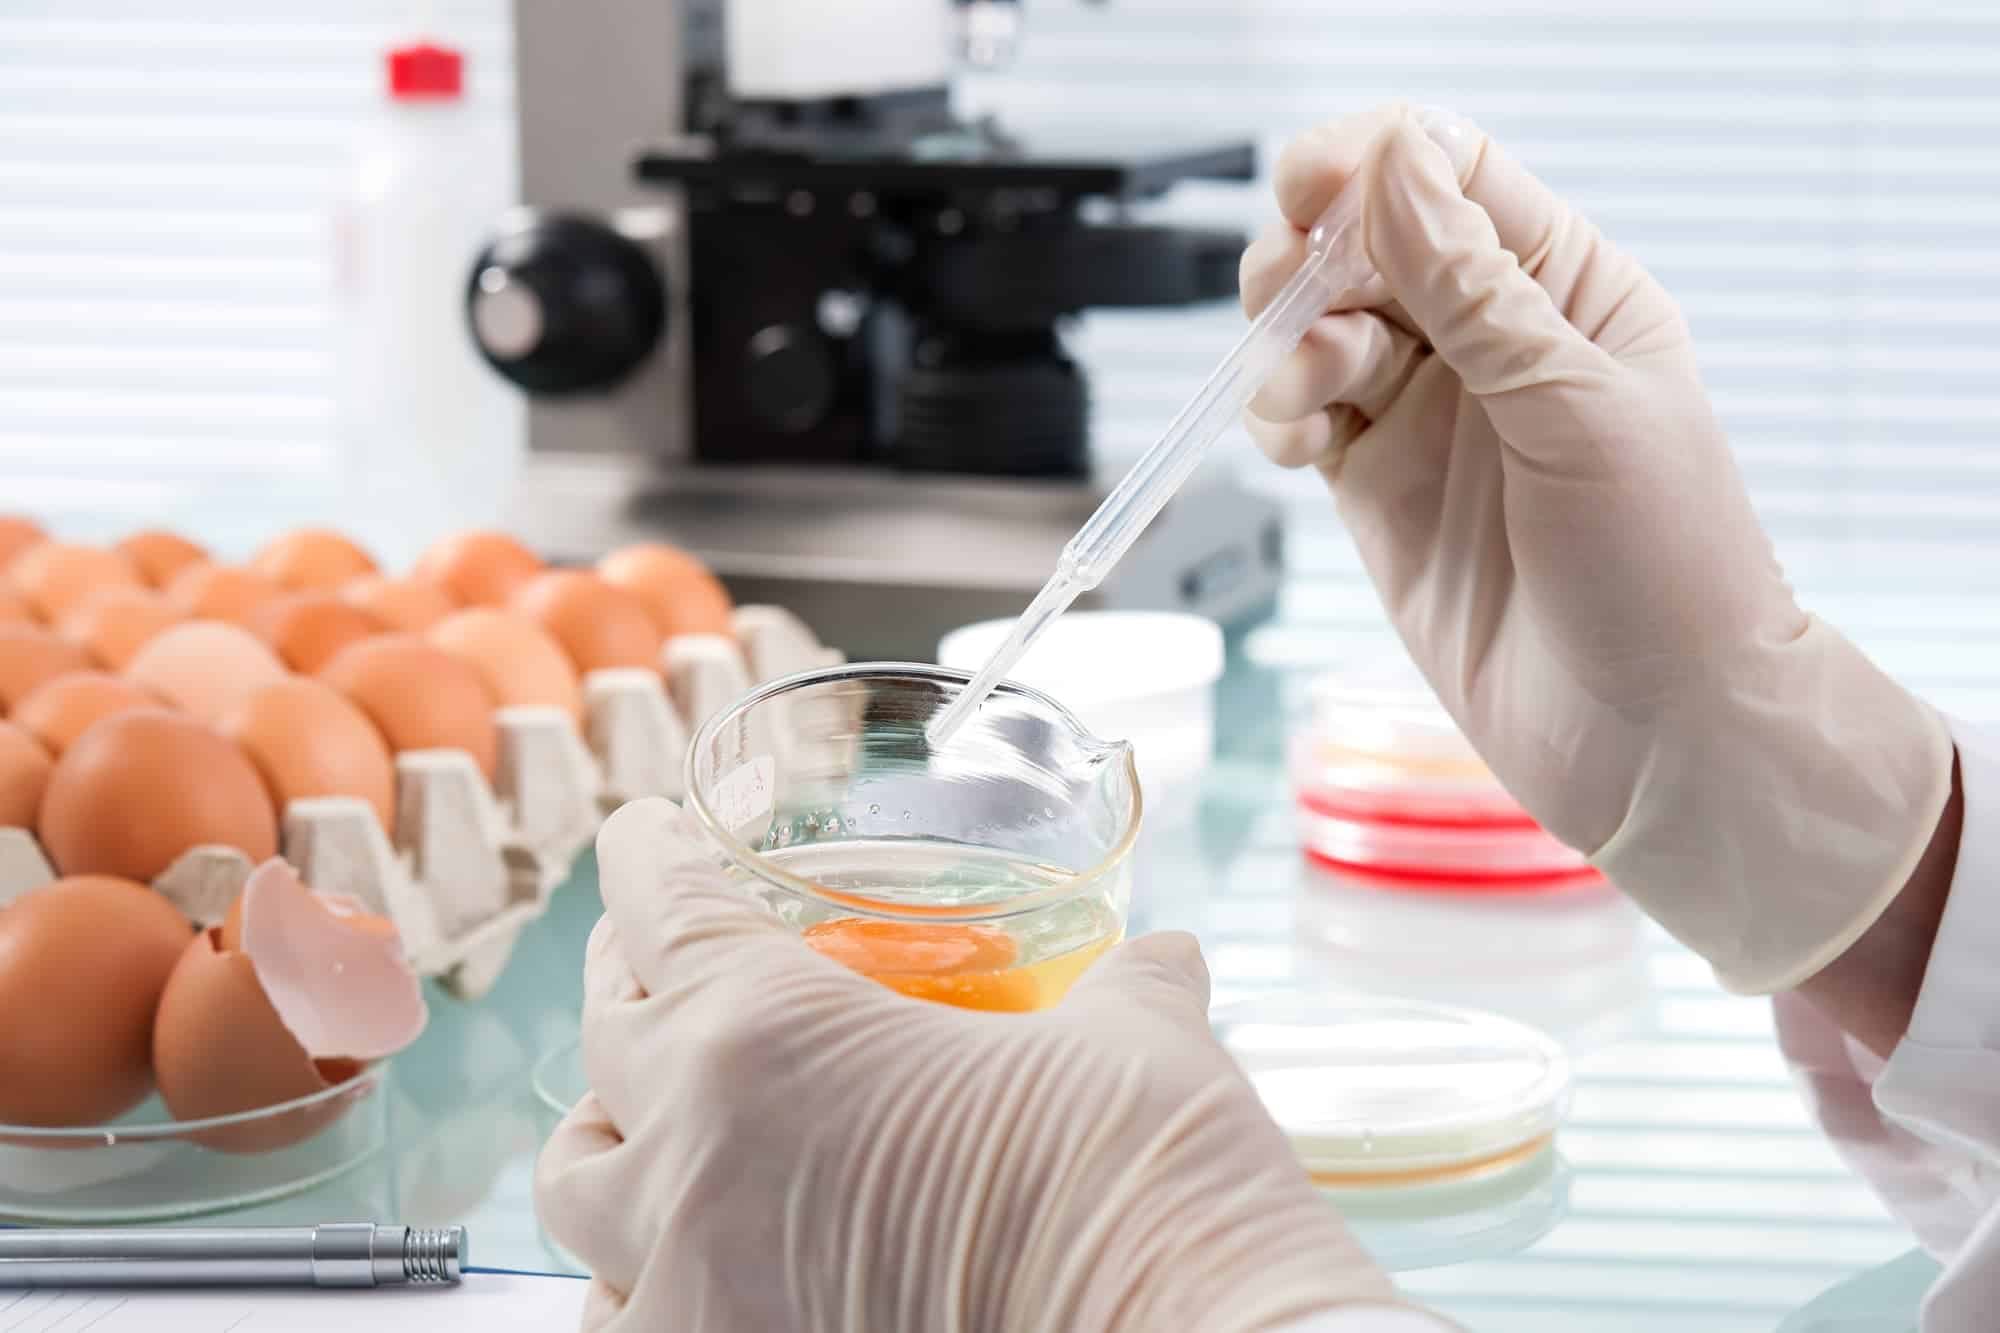 El CSIC prepara una crema a base de huevo que puede protegernos del coronavirus